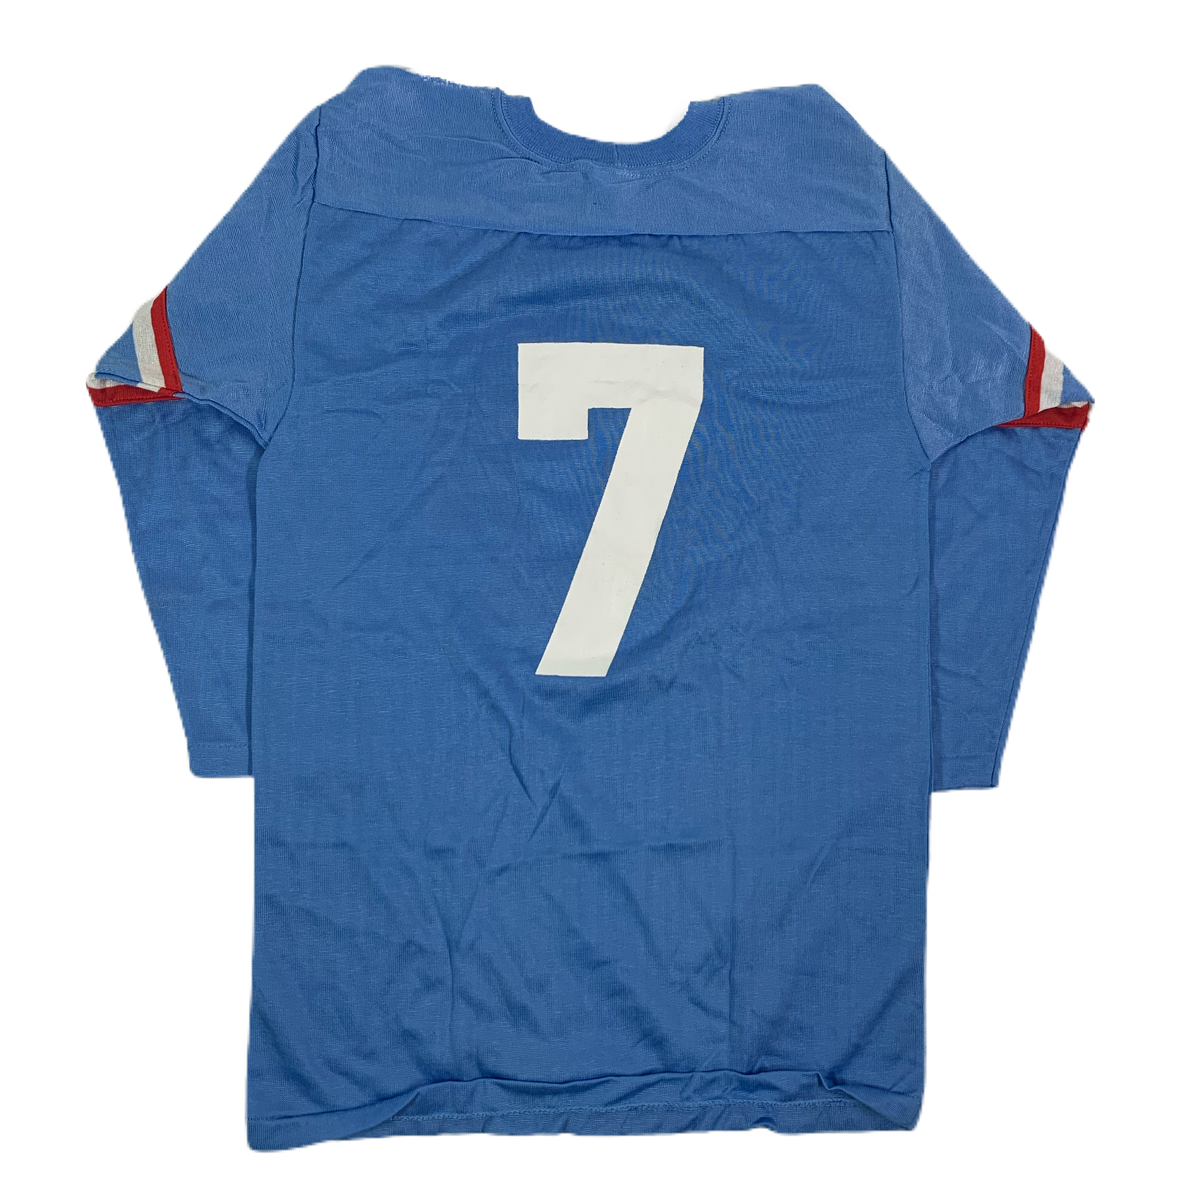 Vintage Houston Oilers “Rawlings” Kid’s Football Jersey - jointcustodydc